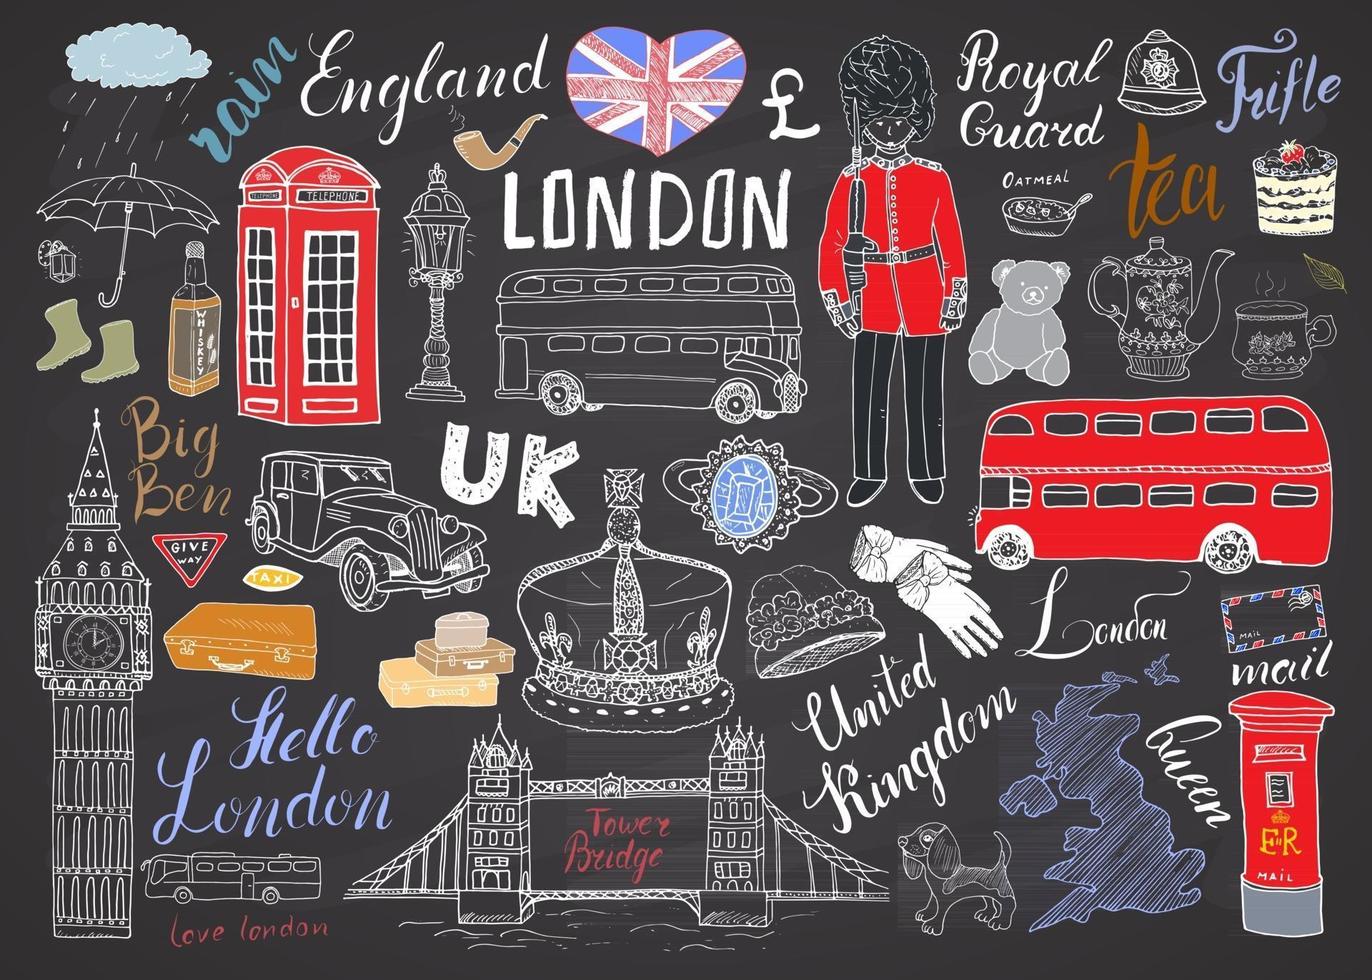 coleção de elementos doodles da cidade de Londres. conjunto desenhado à mão com ponte da torre, coroa, big ben, guarda real, ônibus e táxi vermelhos, mapa e bandeira do Reino Unido, bule de chá, letras, ilustração vetorial isolada vetor